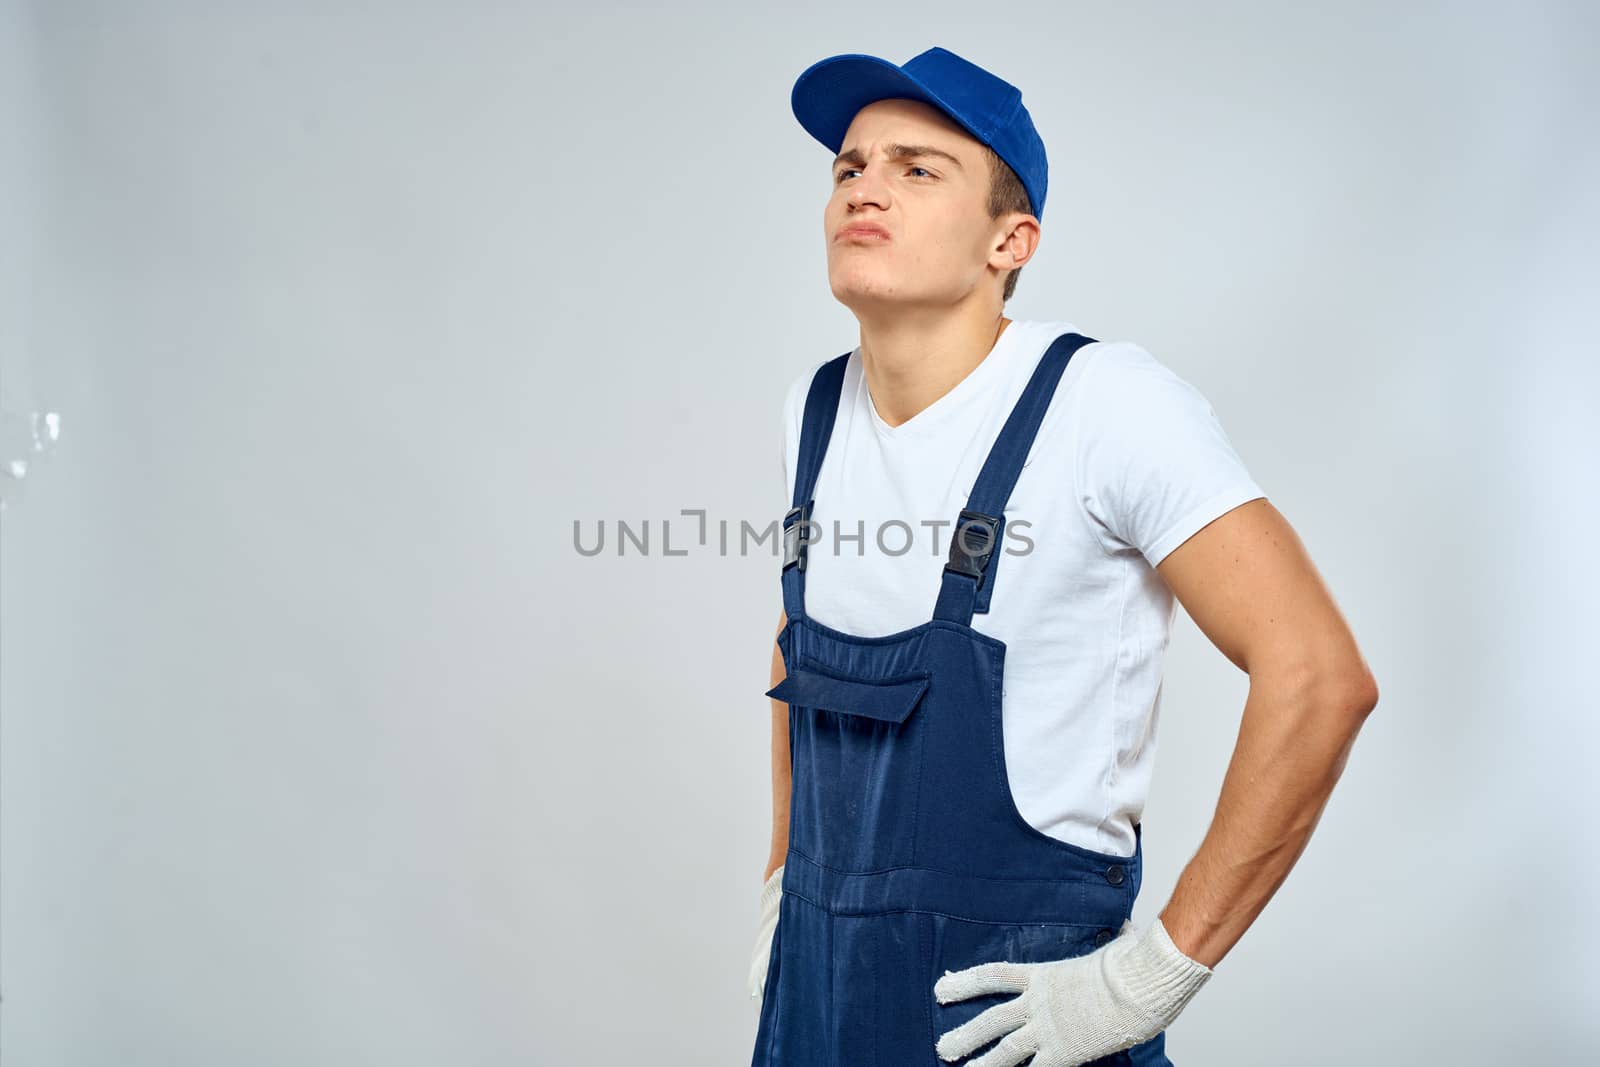 Man worker in forklift uniform delivery service light background by SHOTPRIME